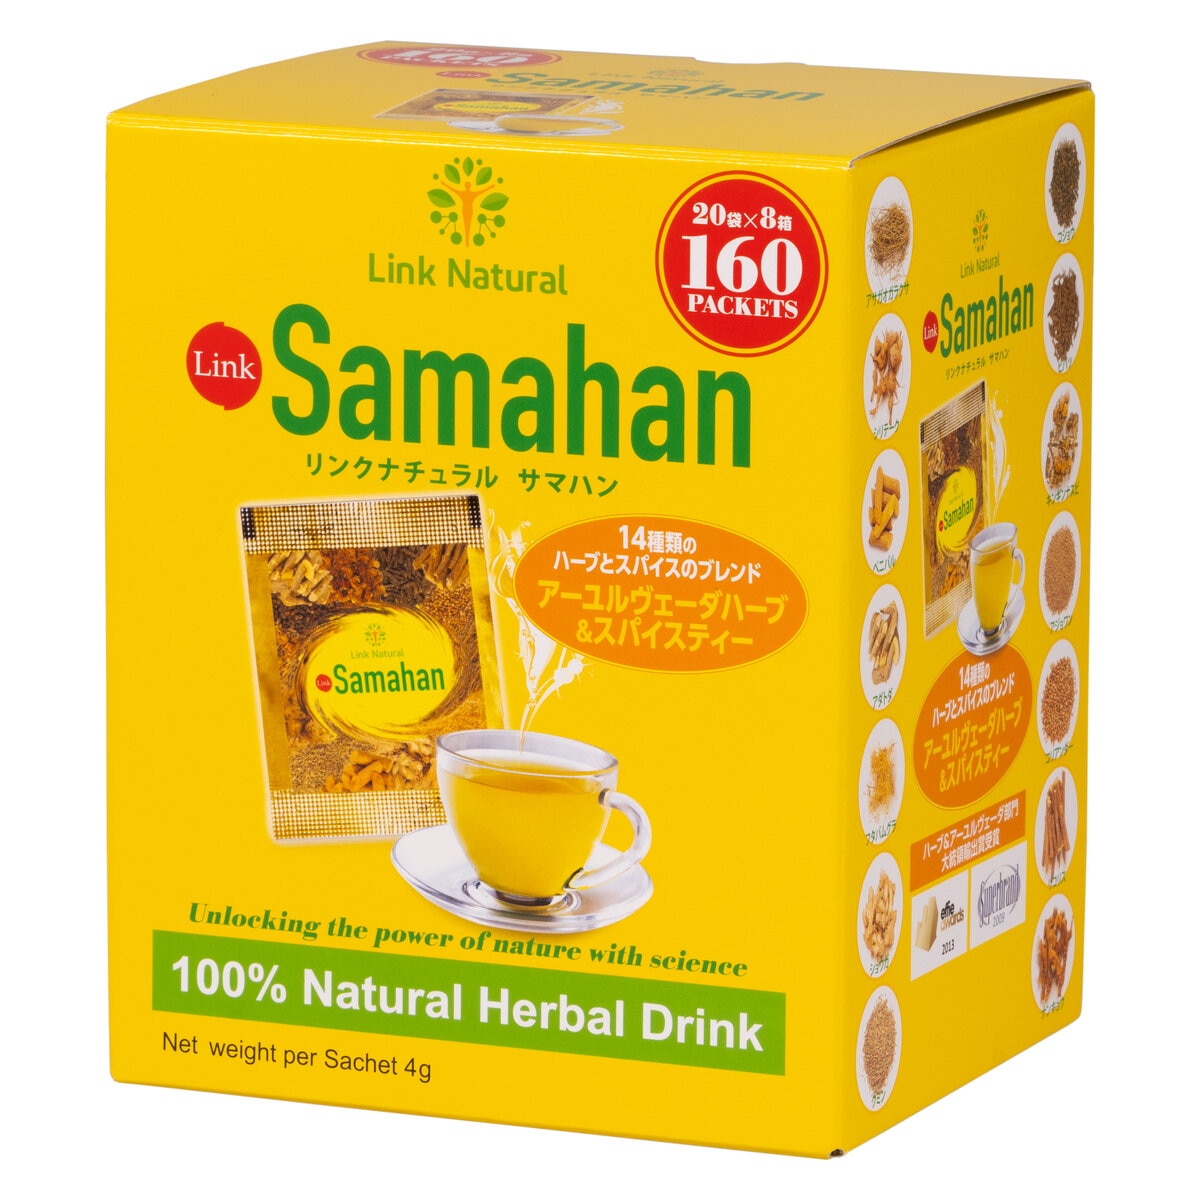 サマハン 100包(20包×5箱セット) Samahan リンクナチュラル サマハ